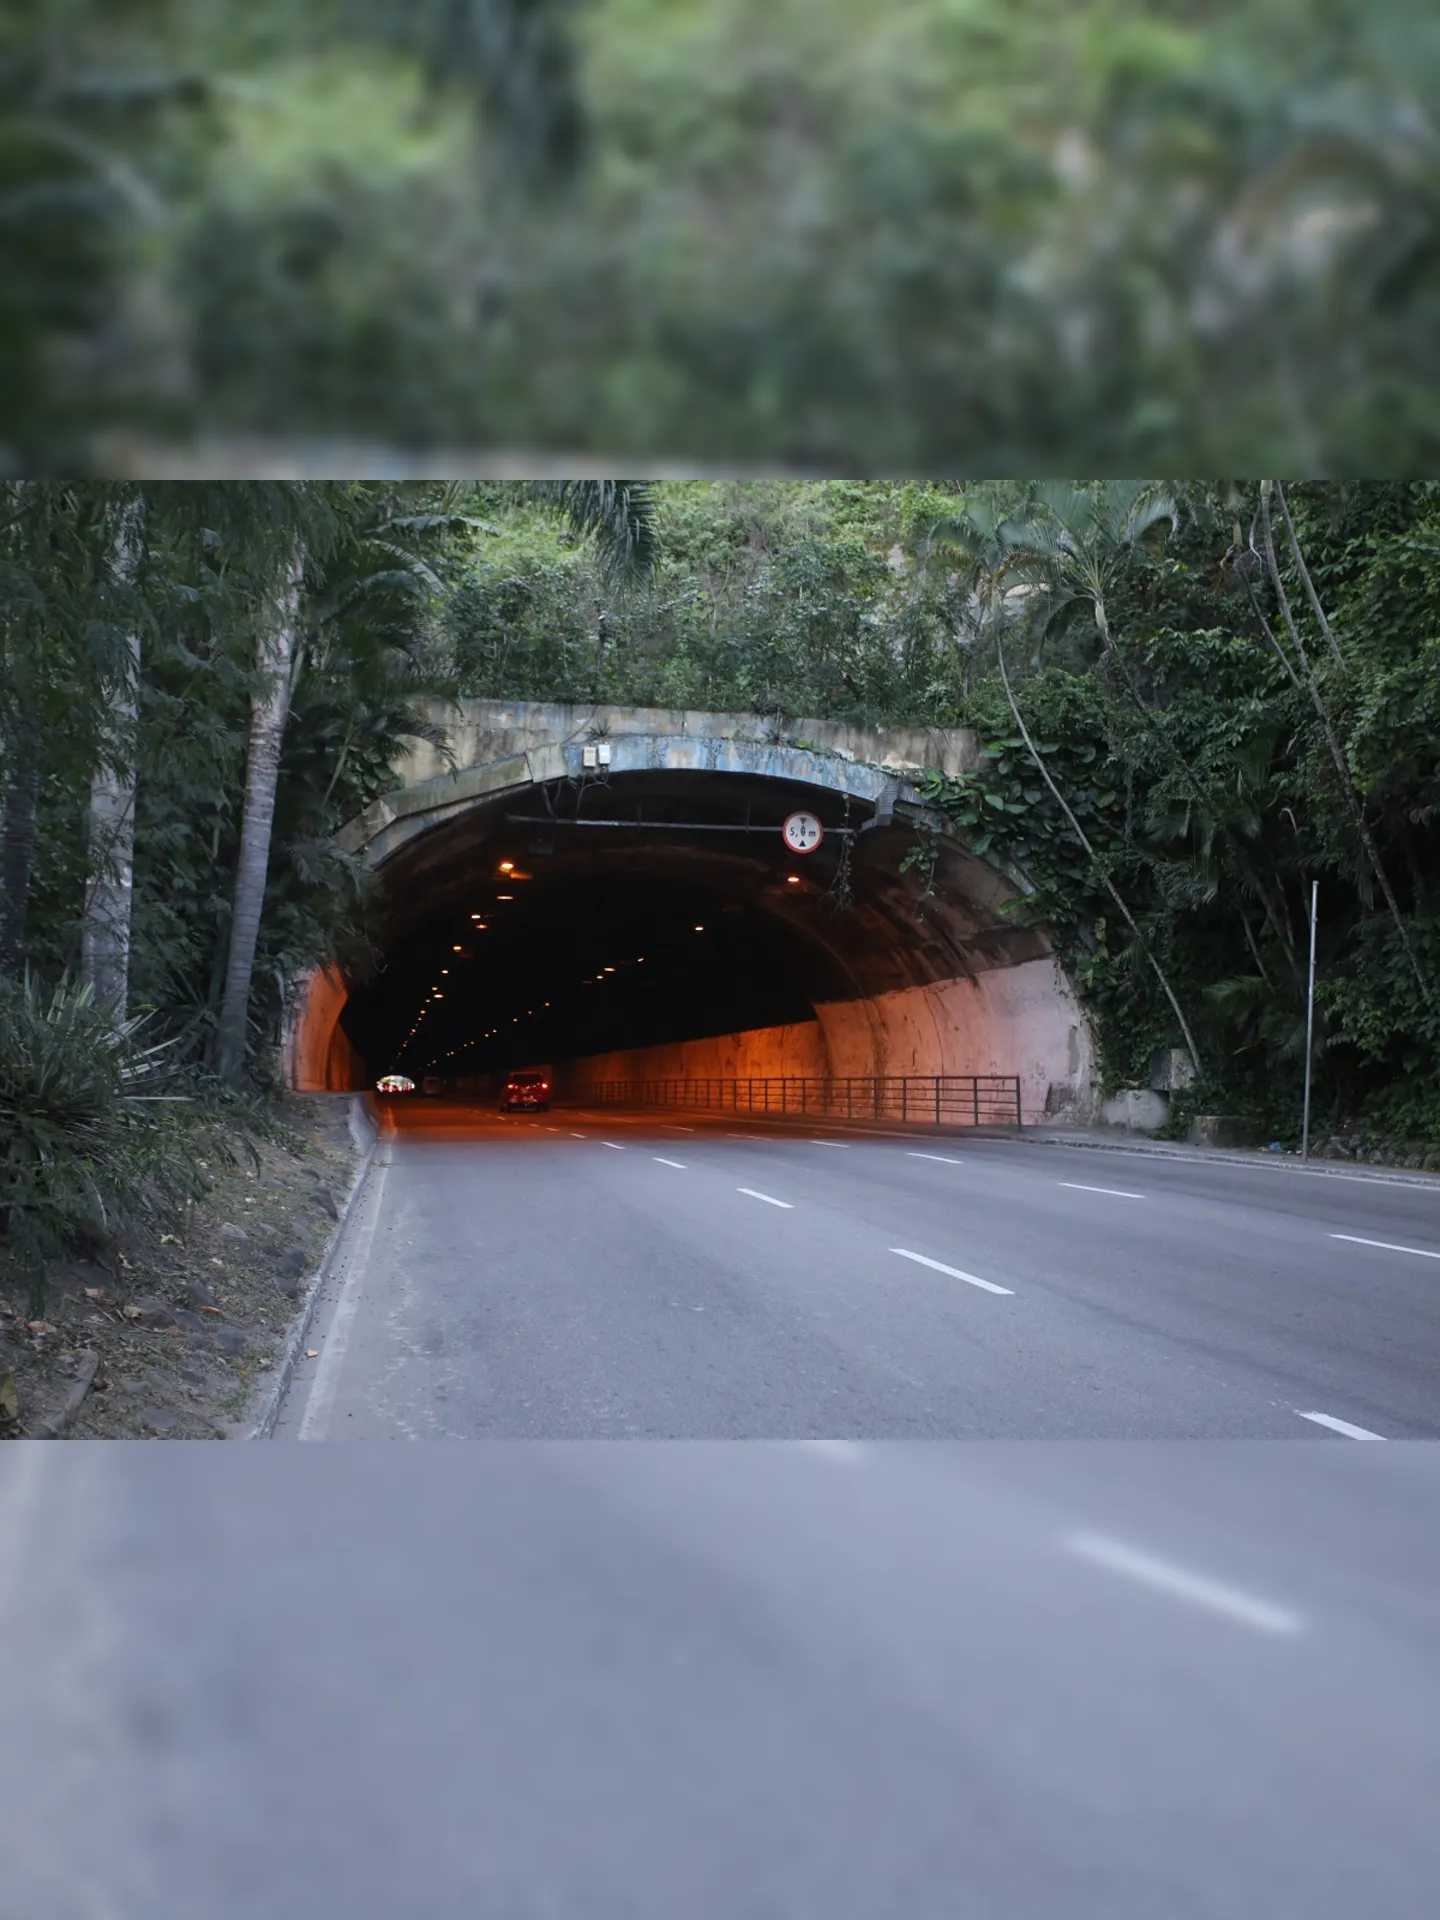 O tiroteio, próximo ao túnel Raul Veiga, assustou moradores de Icaraí